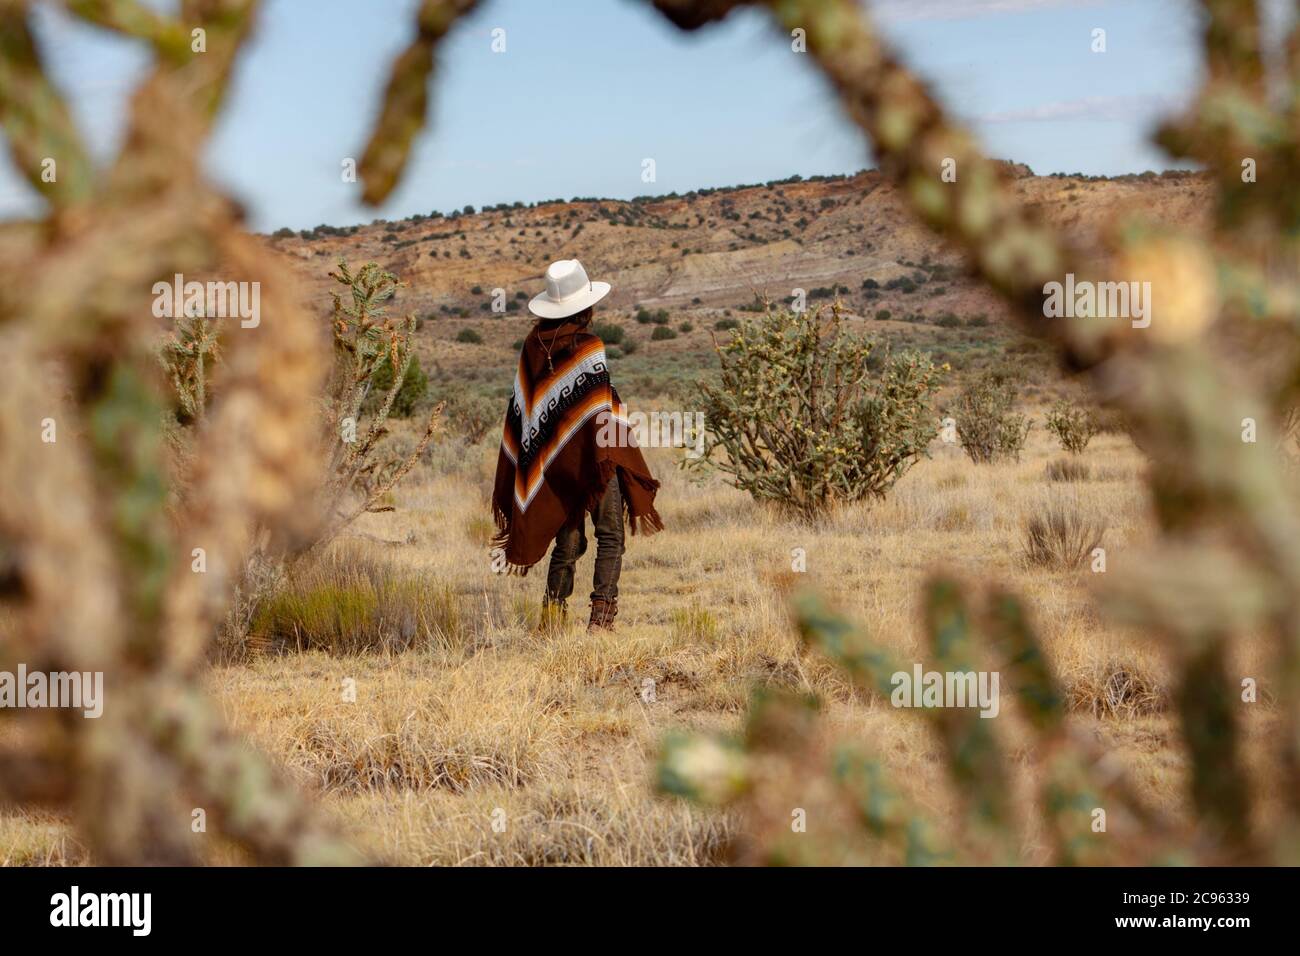 Hispanic Frau in einem Poncho und Cowboy Hut Wanderungen durch eine dramatische, heiße Wüstenlandschaft umgeben von hohen Kakteen in der ojito Wildnis Gegend, New M Stockfoto